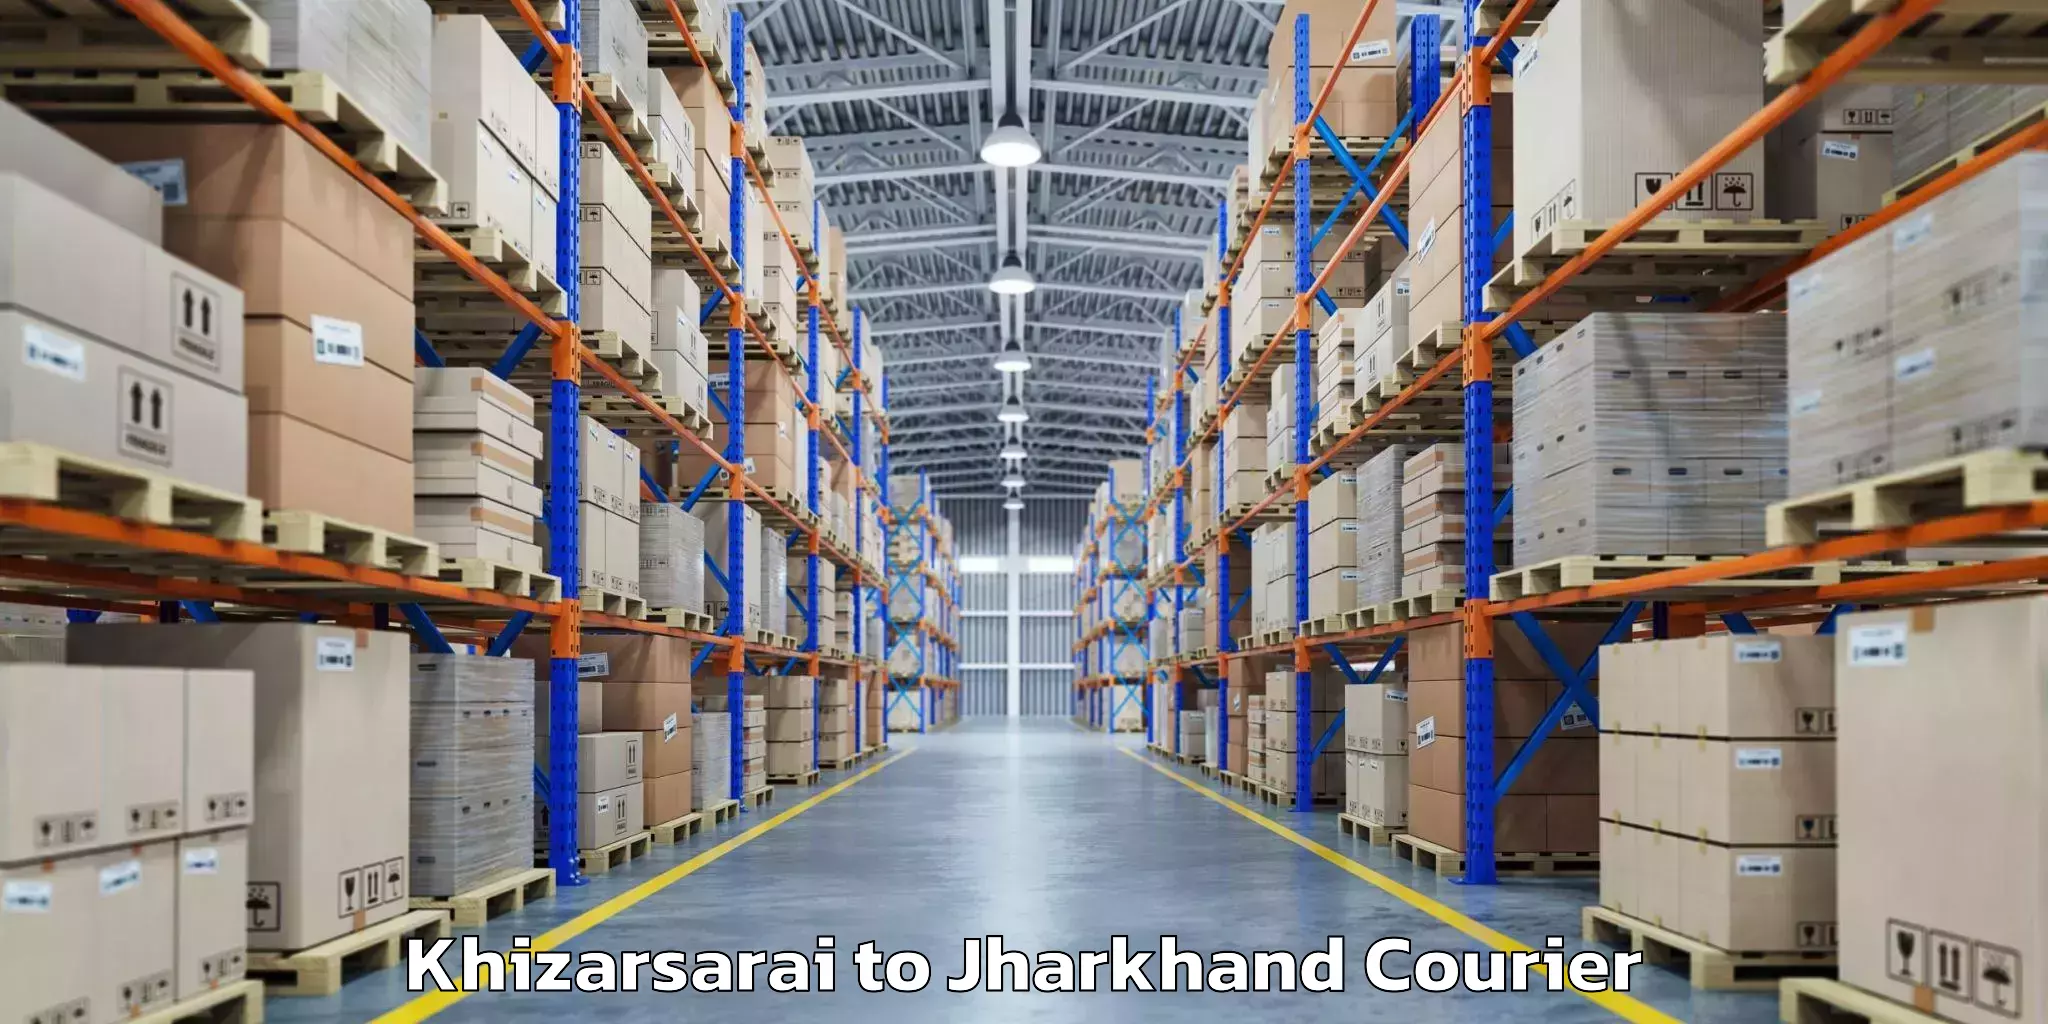 Luggage transport consulting Khizarsarai to Manoharpur